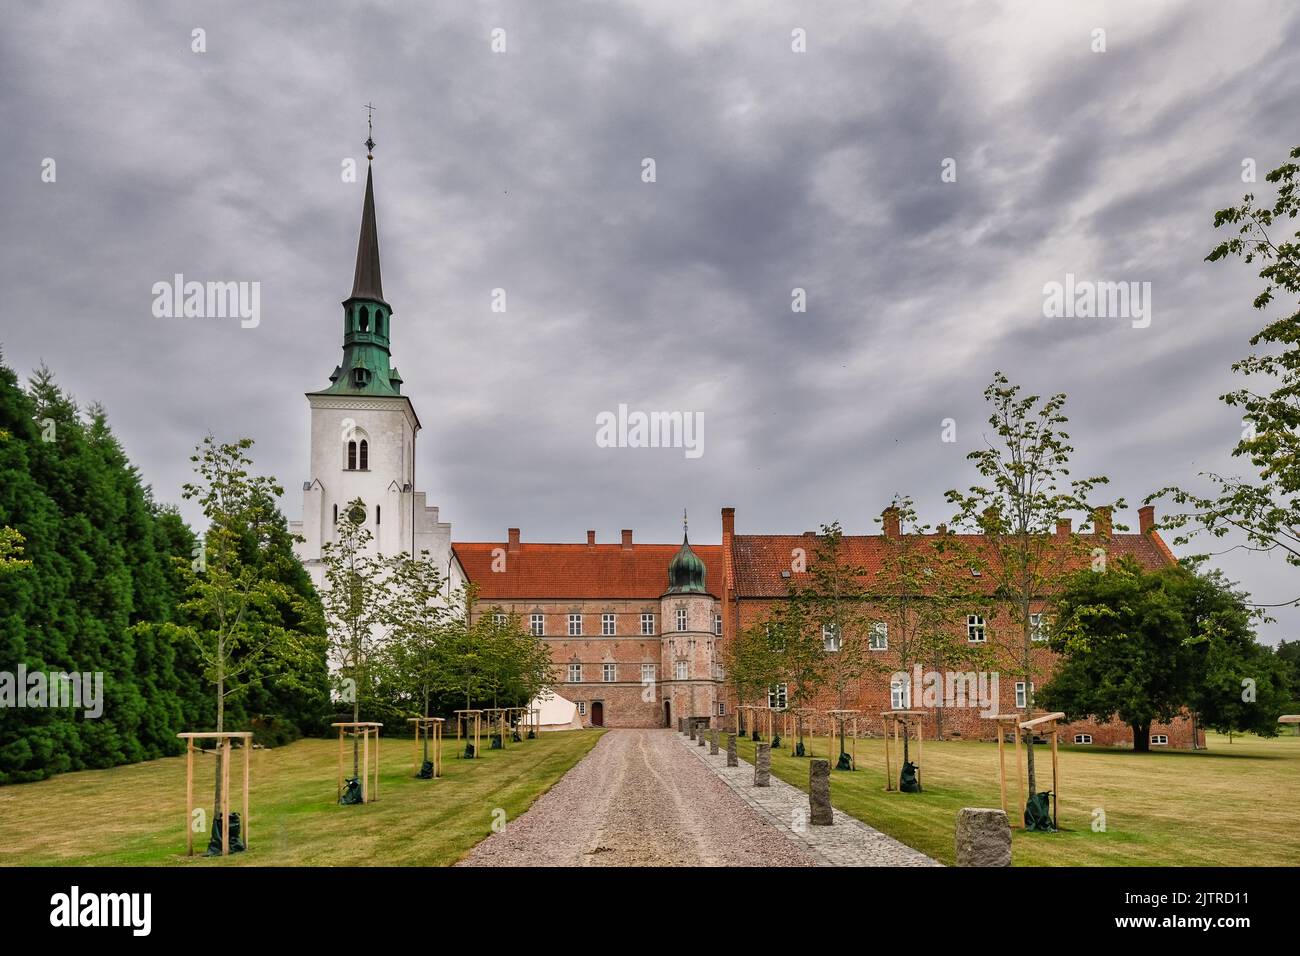 Brahetrolleborg Castle in Korinth on Funen, Denmark Stock Photo